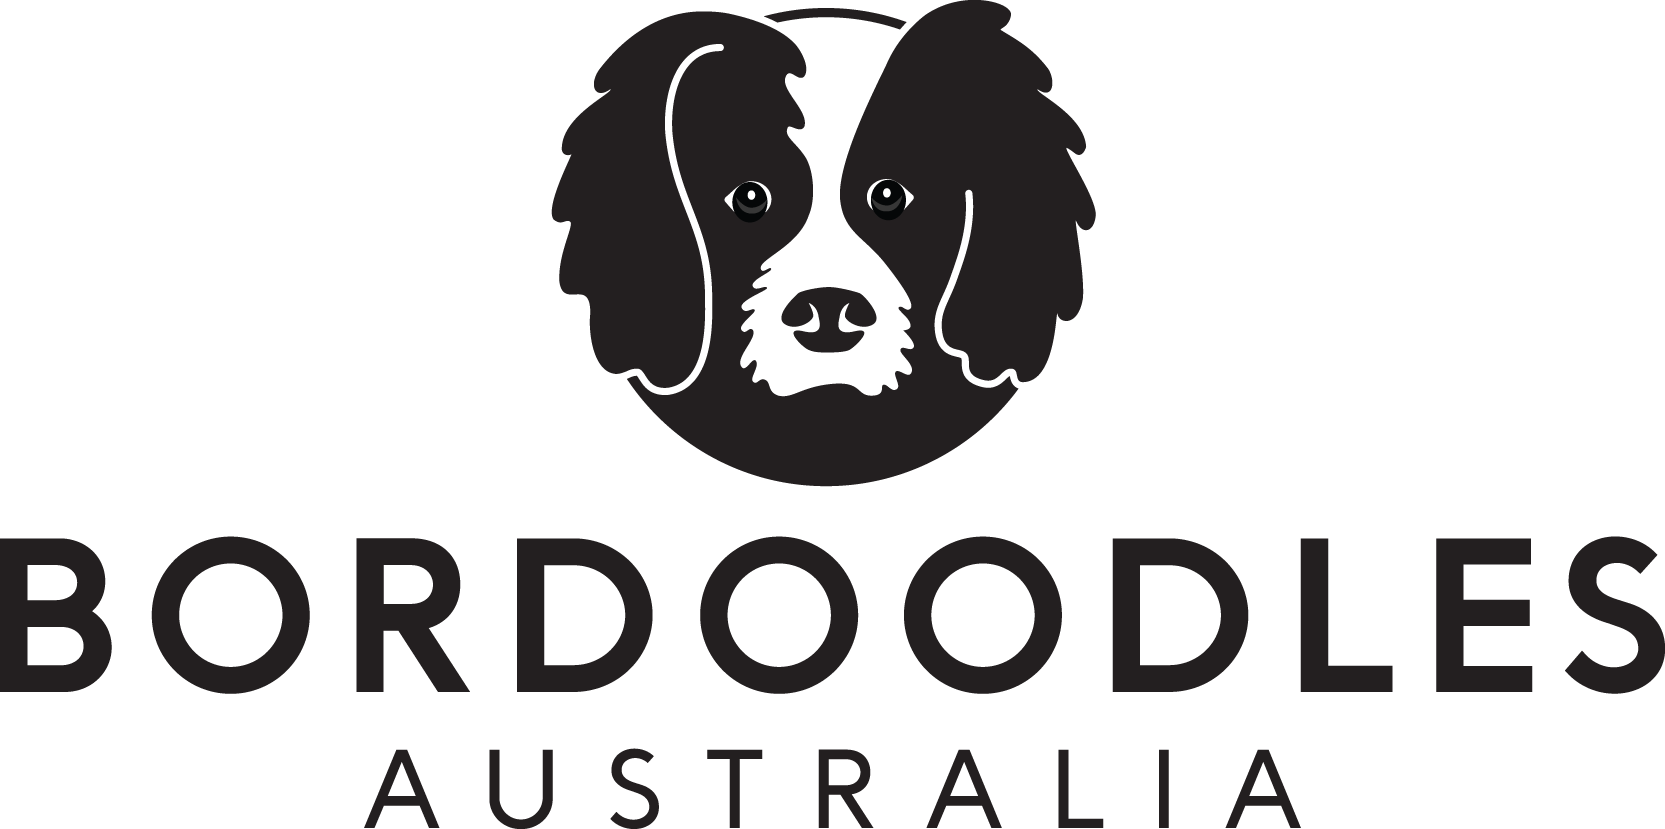 Bordoodles Australia